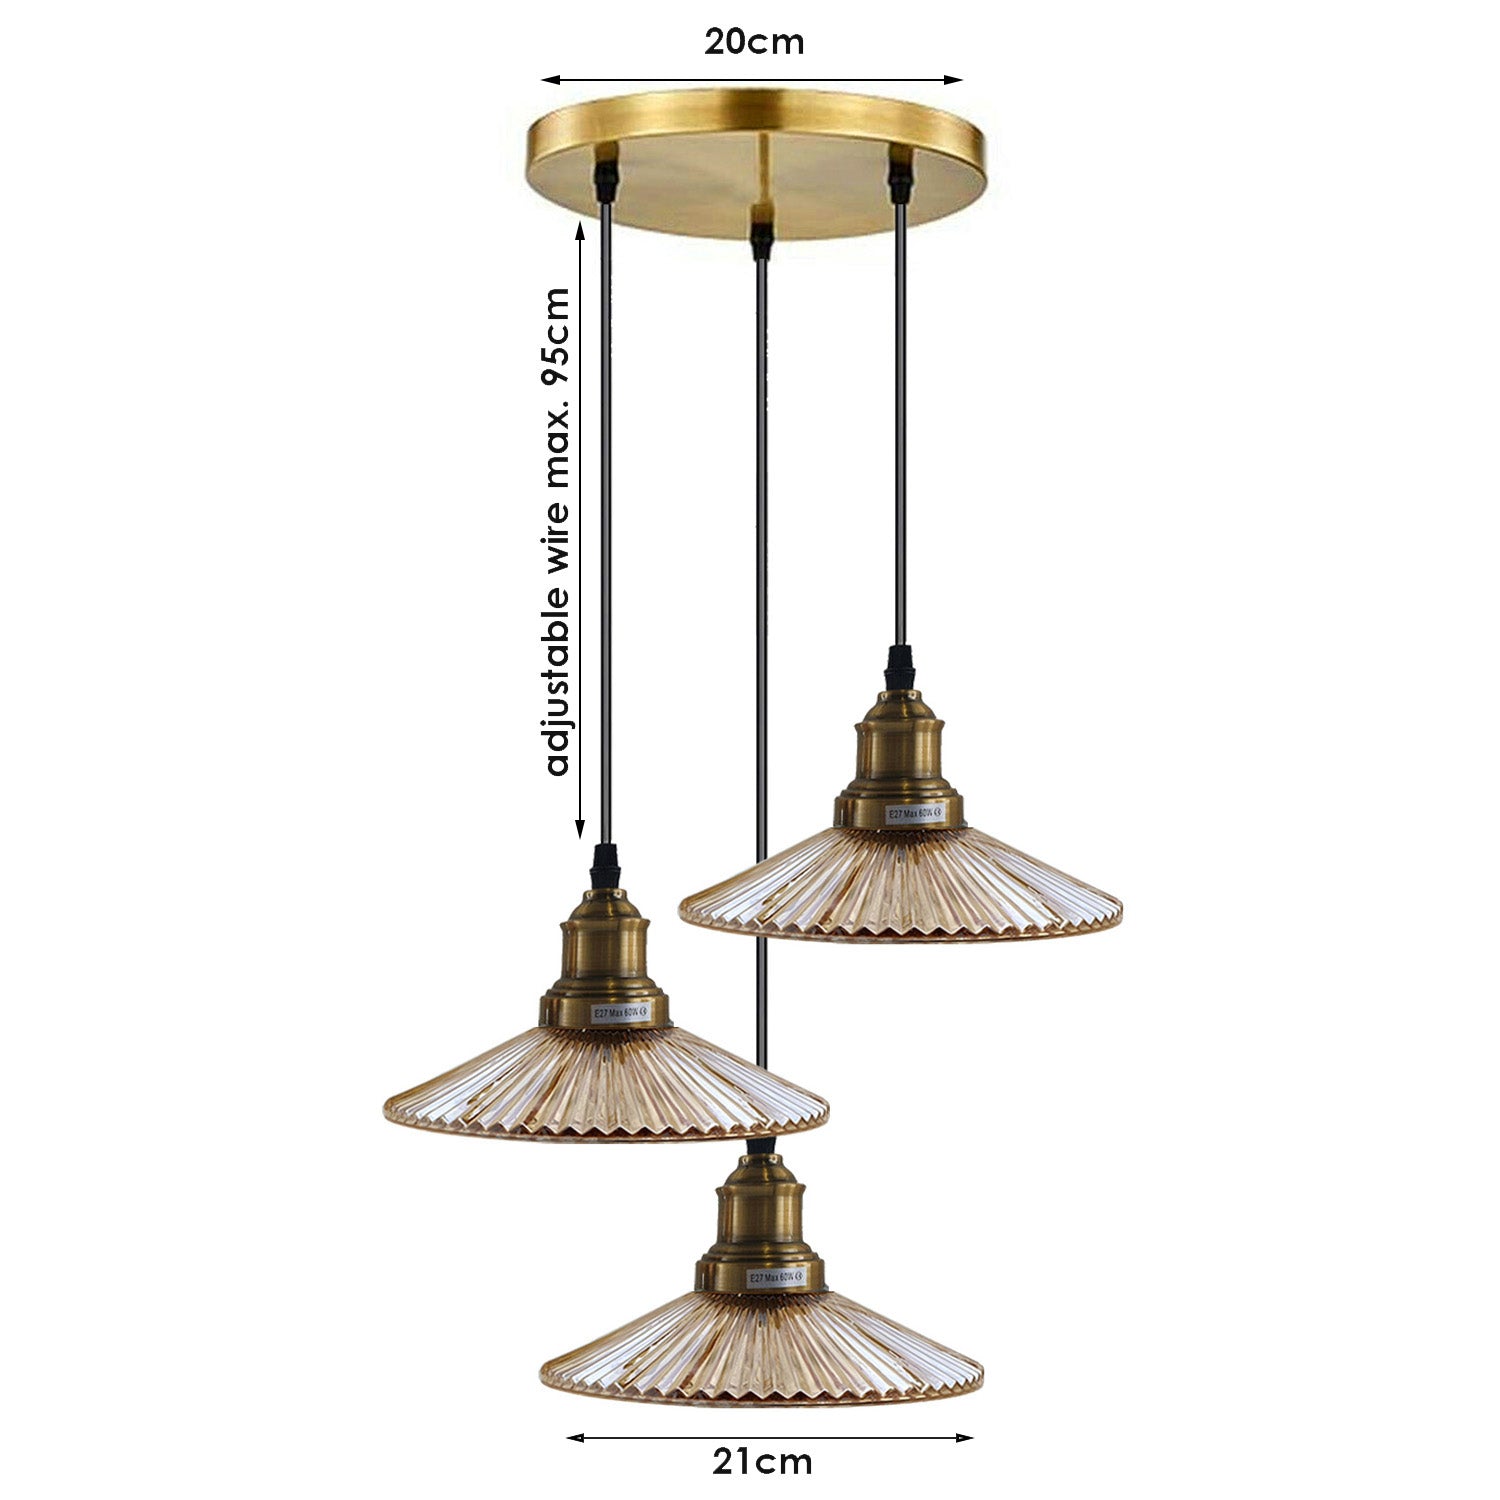 3 Way Ceiling Pendant Light Cluster Light Fitting Glass Lampshade Yellow Brass Finish Home E27 Lighting Kit~1559 - LEDSone UK Ltd